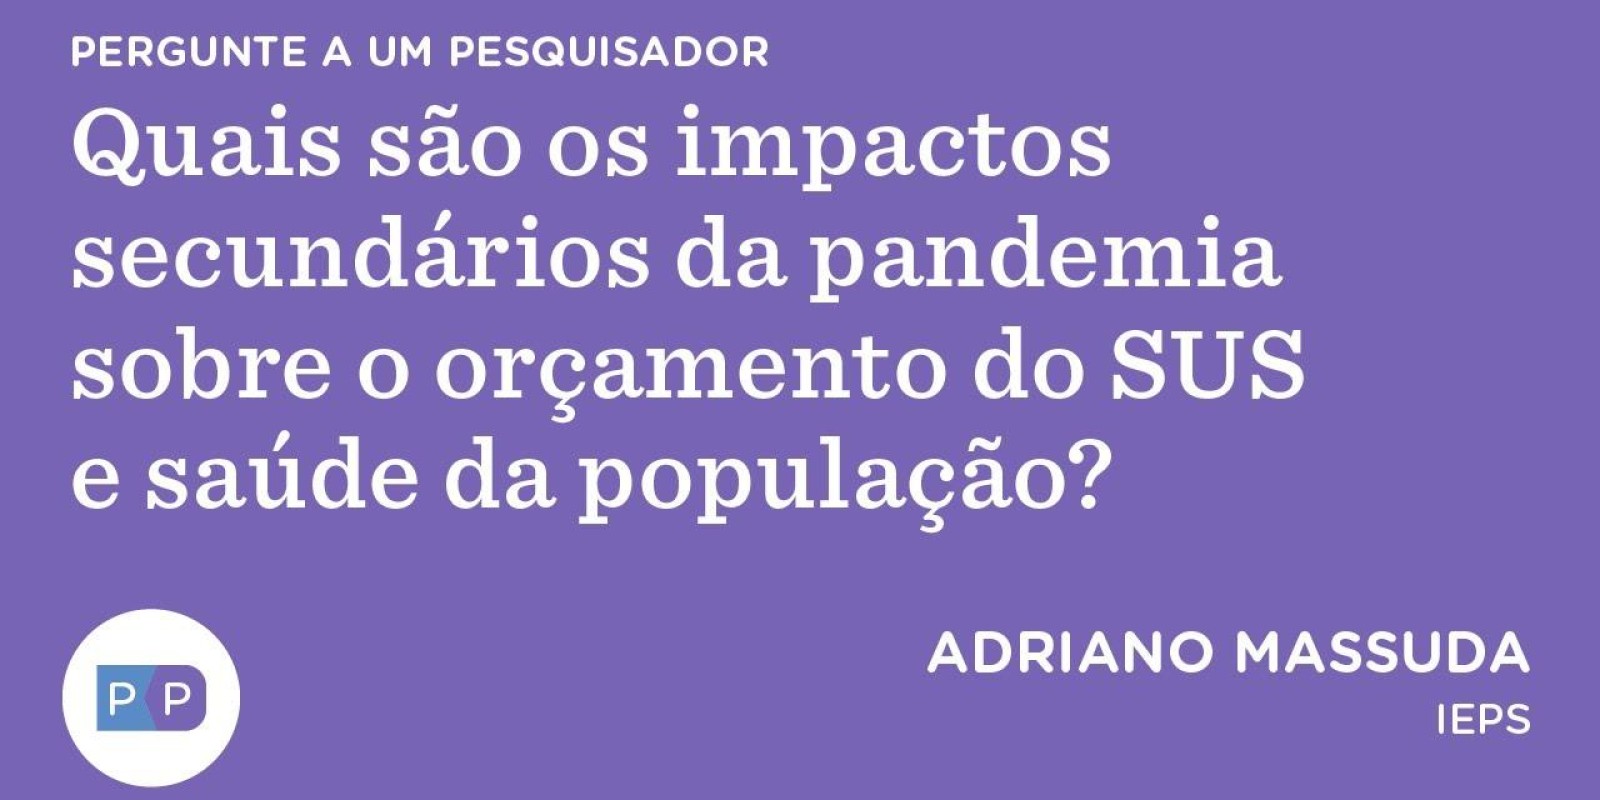 Quais são os impactos secundários da pandemia sobre o orçamento do SUS e saúde da população?